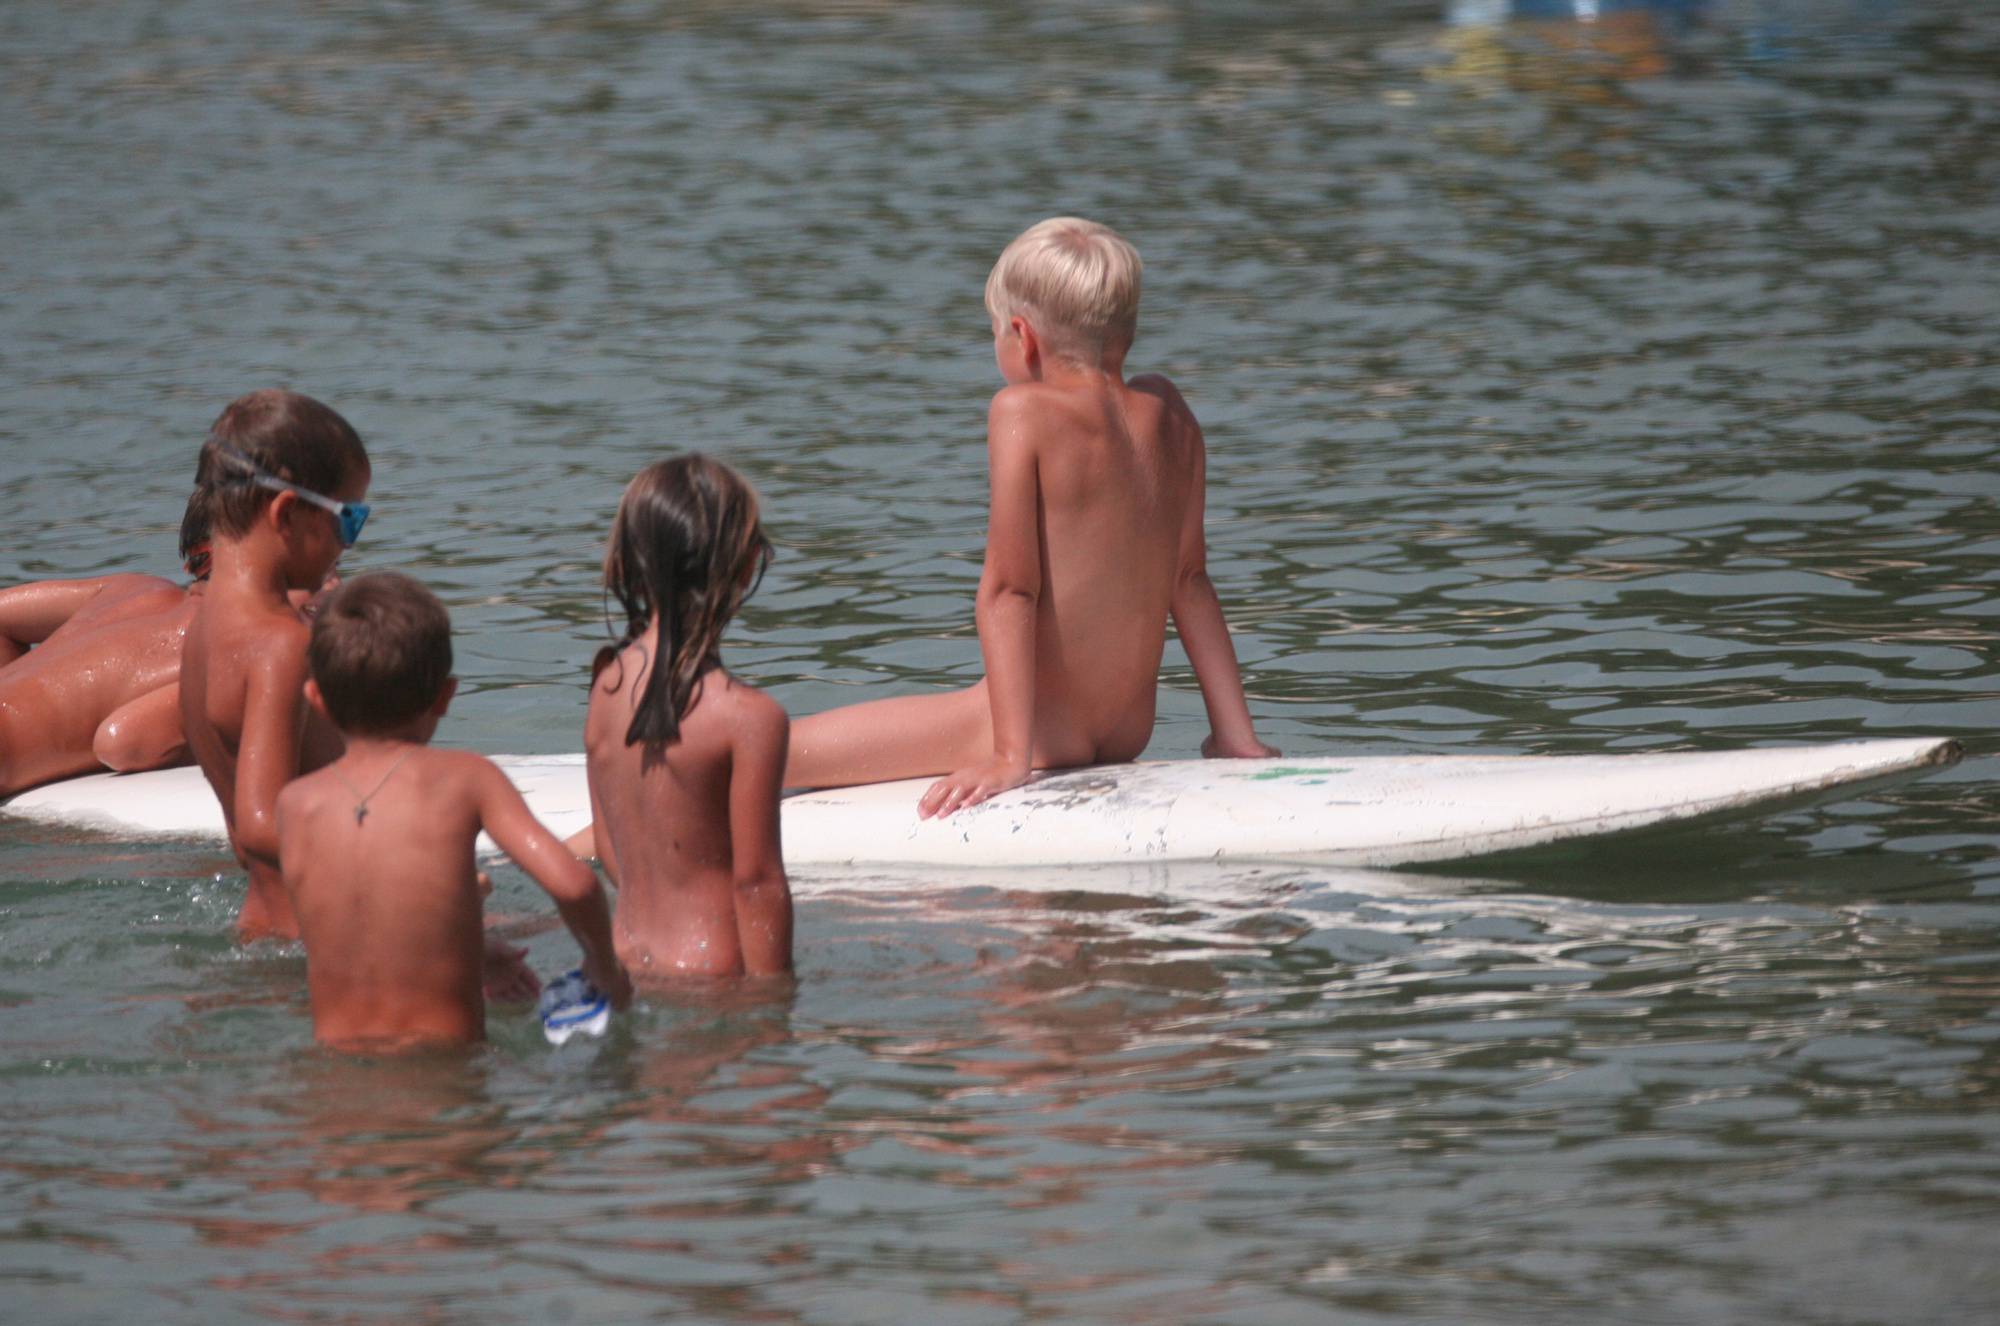 Purenudism Pics-Several Kids On Surfboard - 1